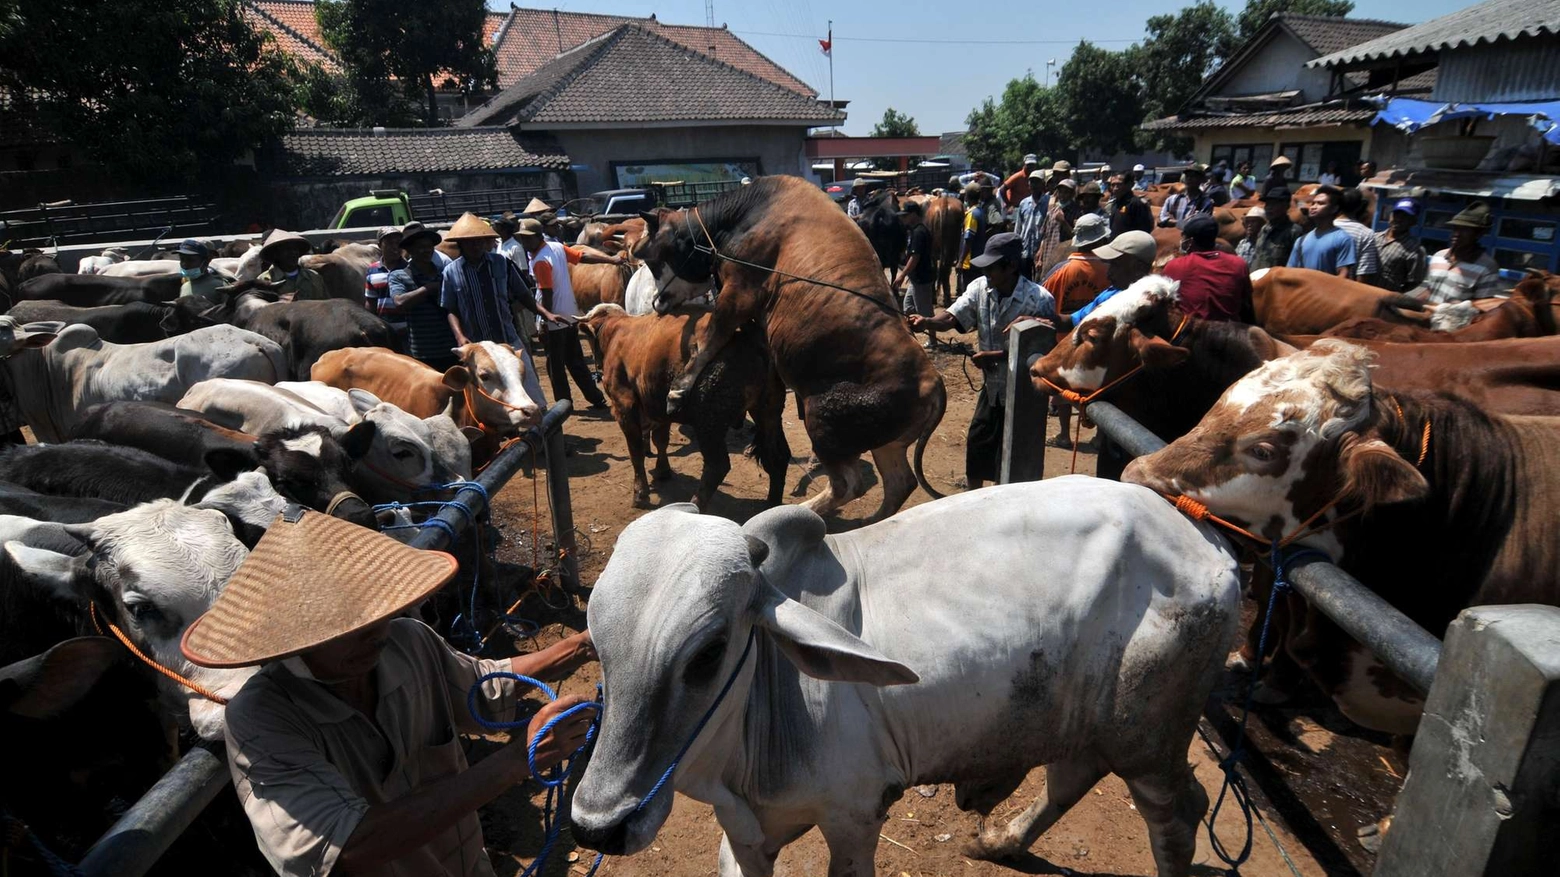 Mercato di animali in Indonesia per la festa del sacrificio (Olycom)